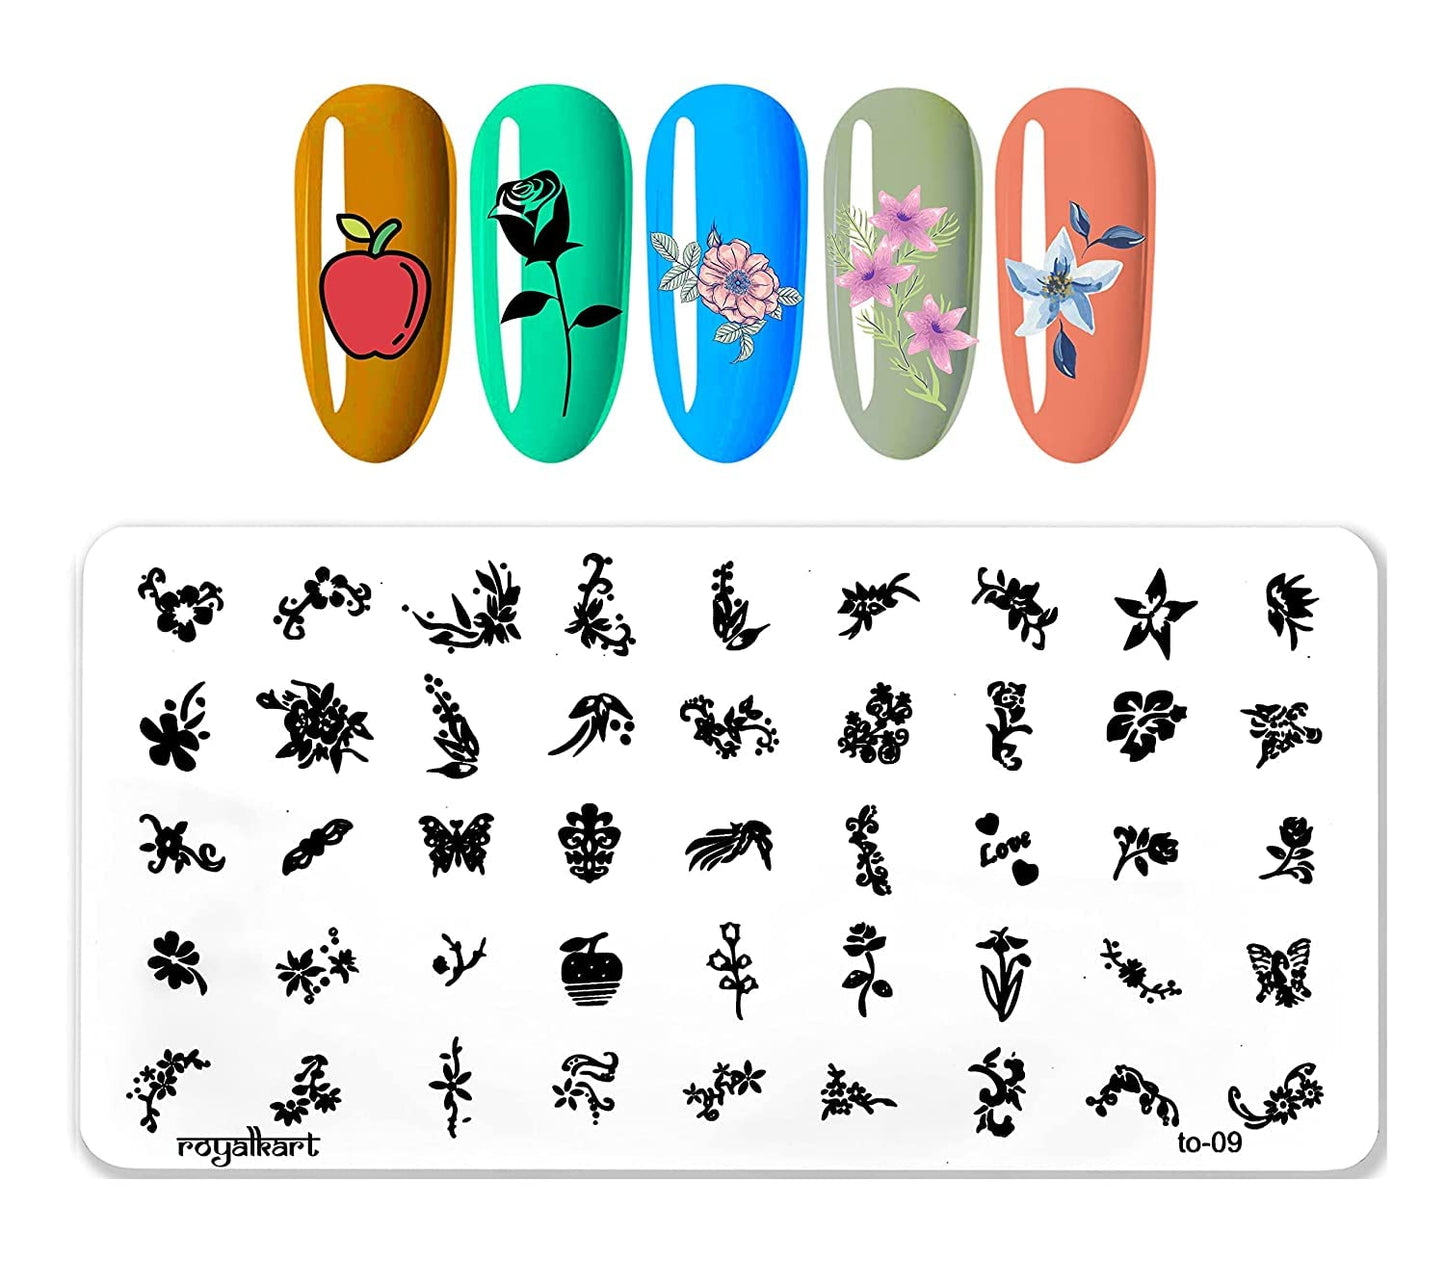 Nail Art Combo XY-20 with TO-09,03 Nail Art Combo- #Royalkart#nail art stamping kit